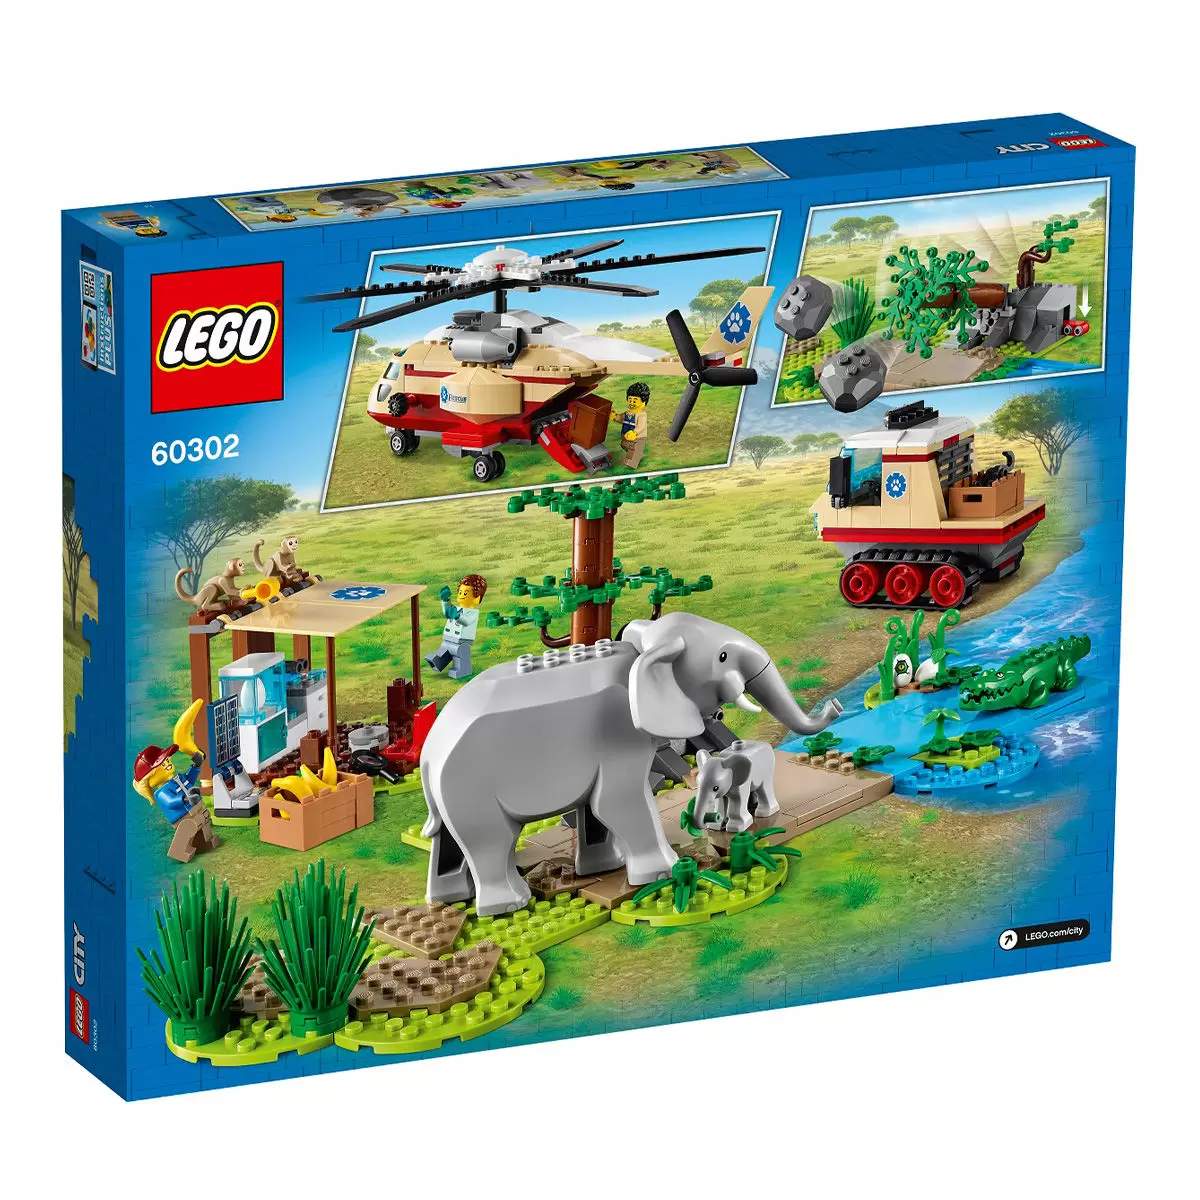 LEGO 城市系列 野生動物救援行動 60302